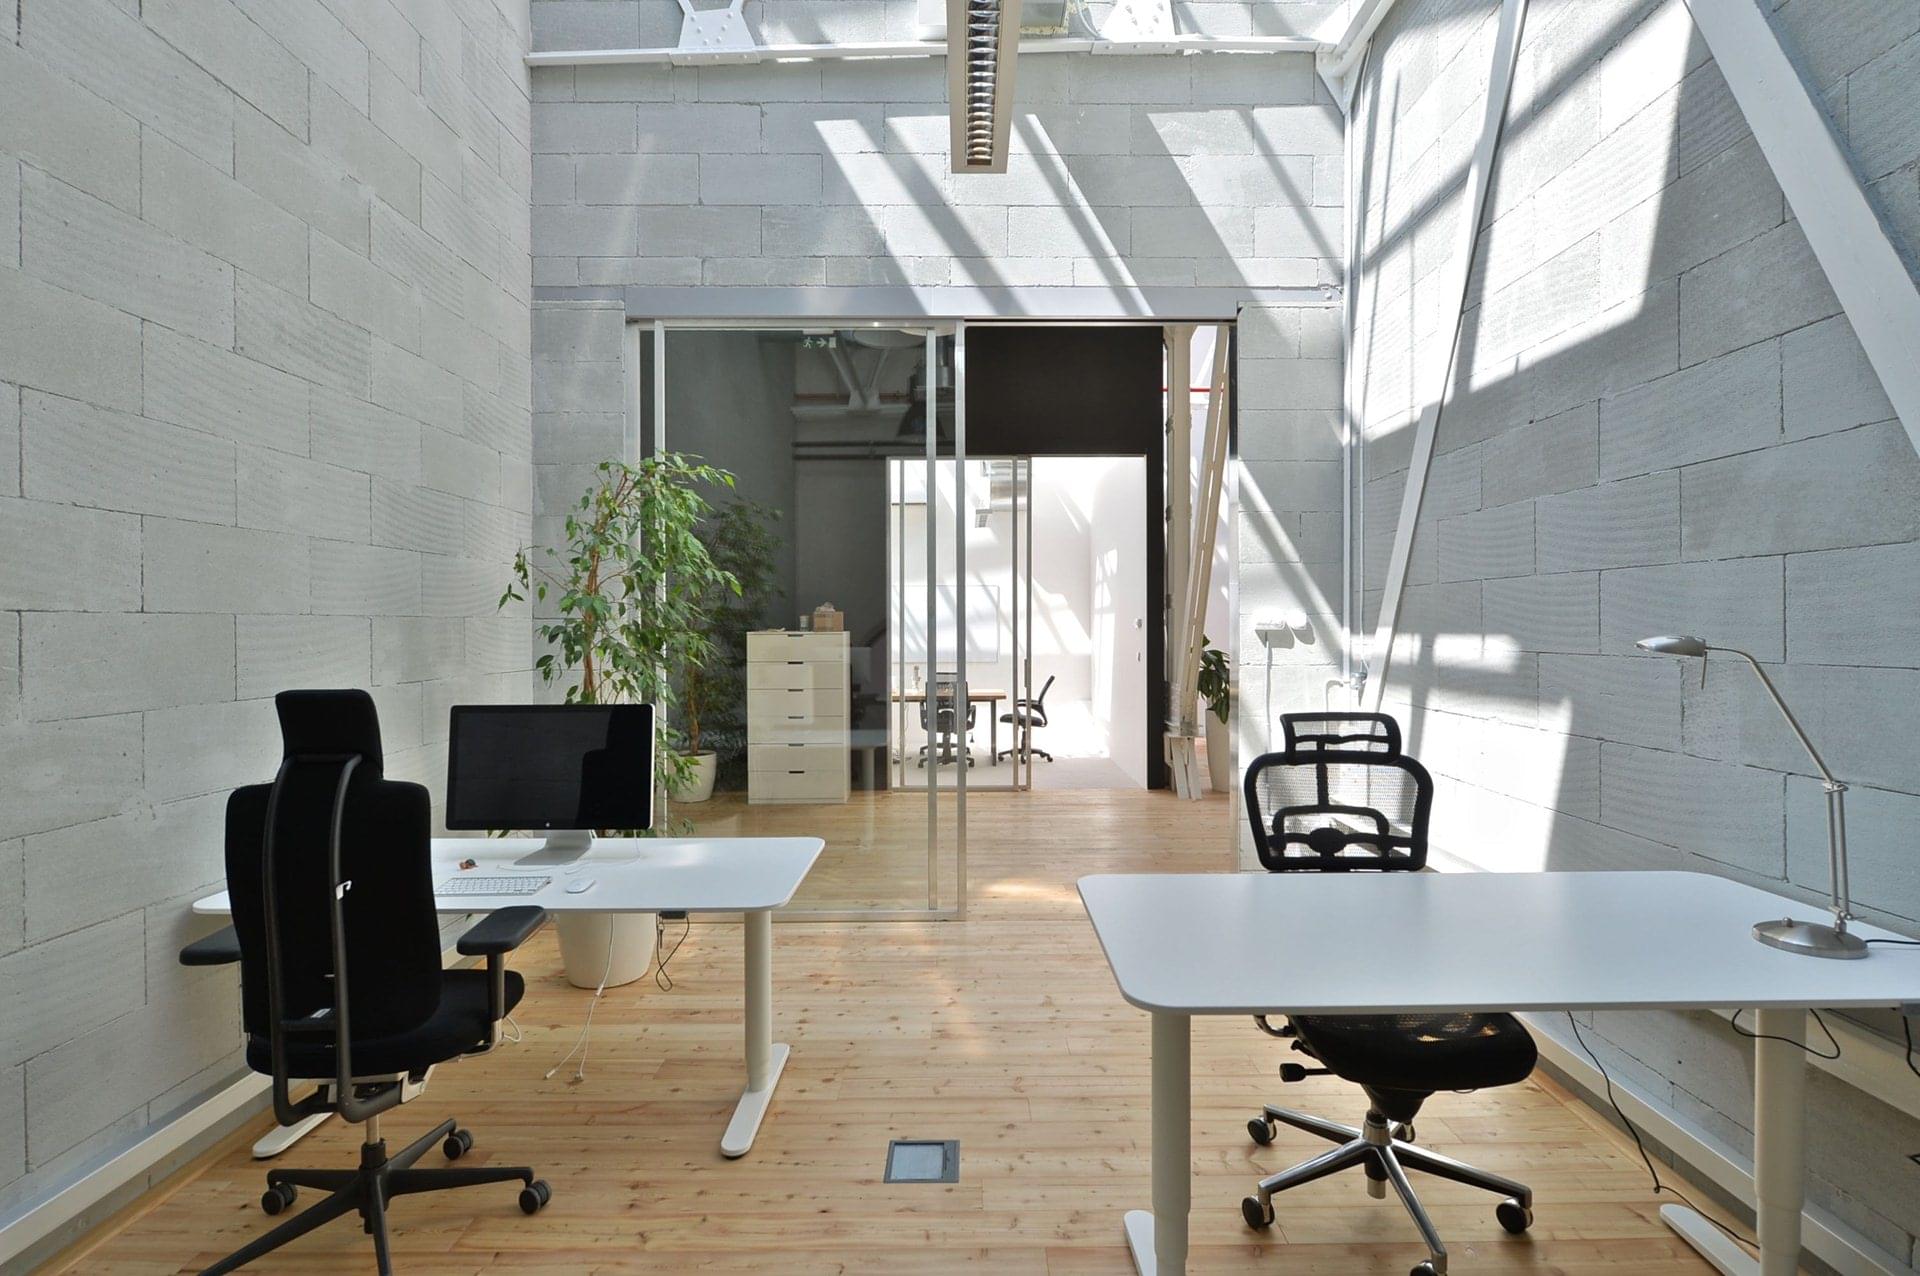 Neobvyklý design kancelářské místnosti s prosklenými dveřmi s jednoduchým interiérem a přirozeným světlem vytvářejícím příjemnou atmosféru na pracovišti.